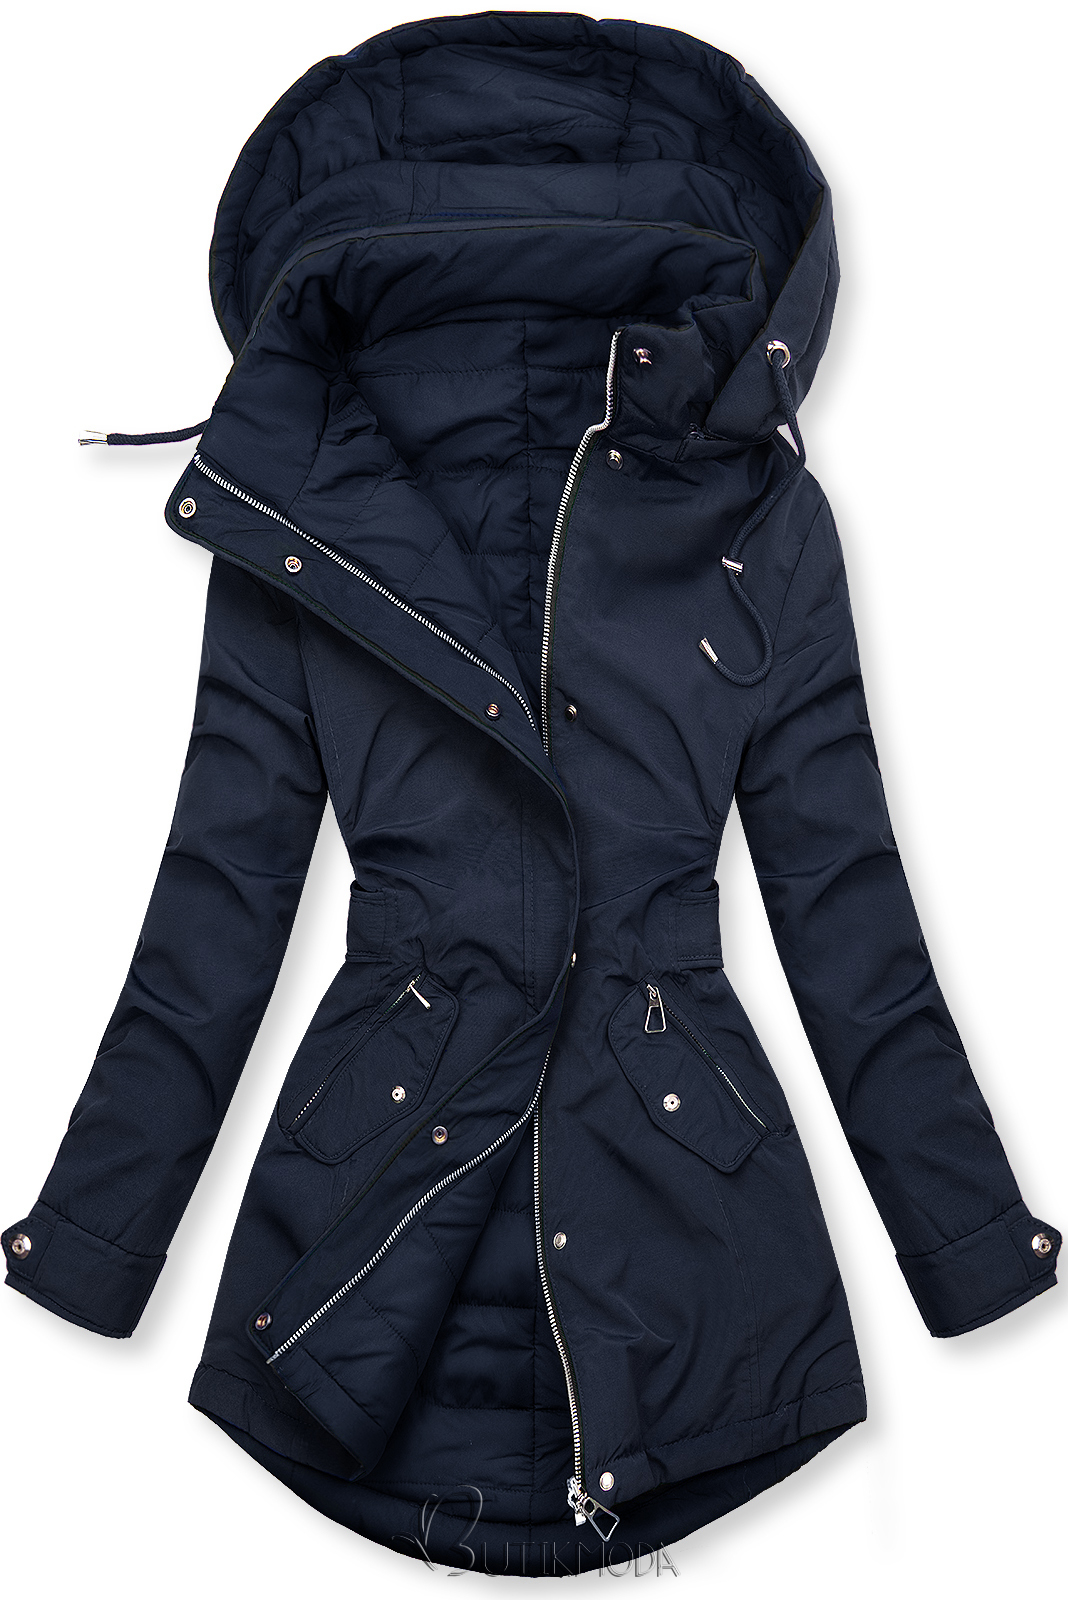 Kifordítható kabát behúzással - sötétkék és kék színű